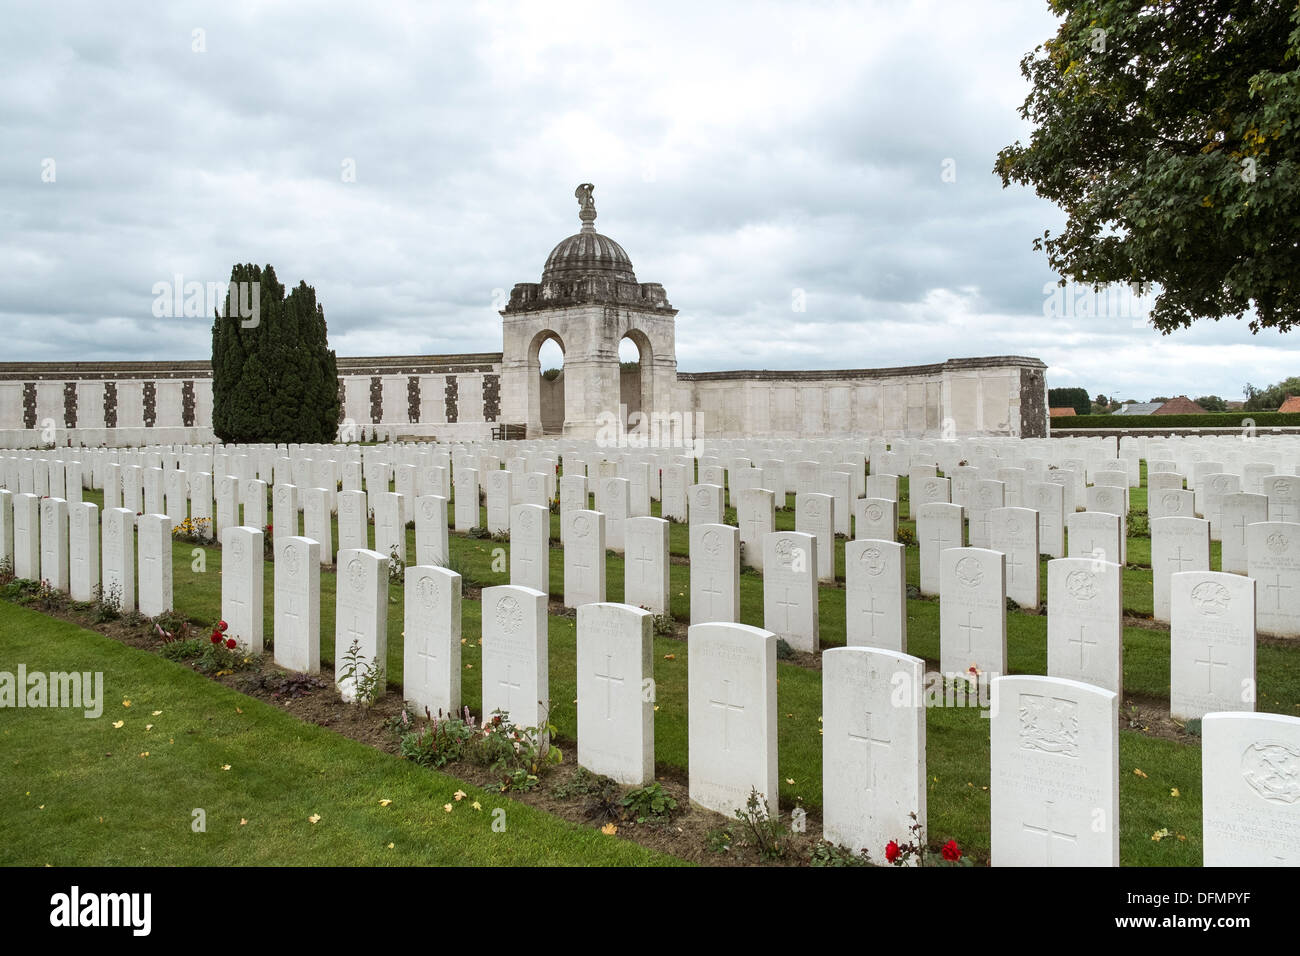 Cimetière de la première guerre mondiale de Tyne Cot Belgique cimetières belges de la première Guerre mondiale Banque D'Images